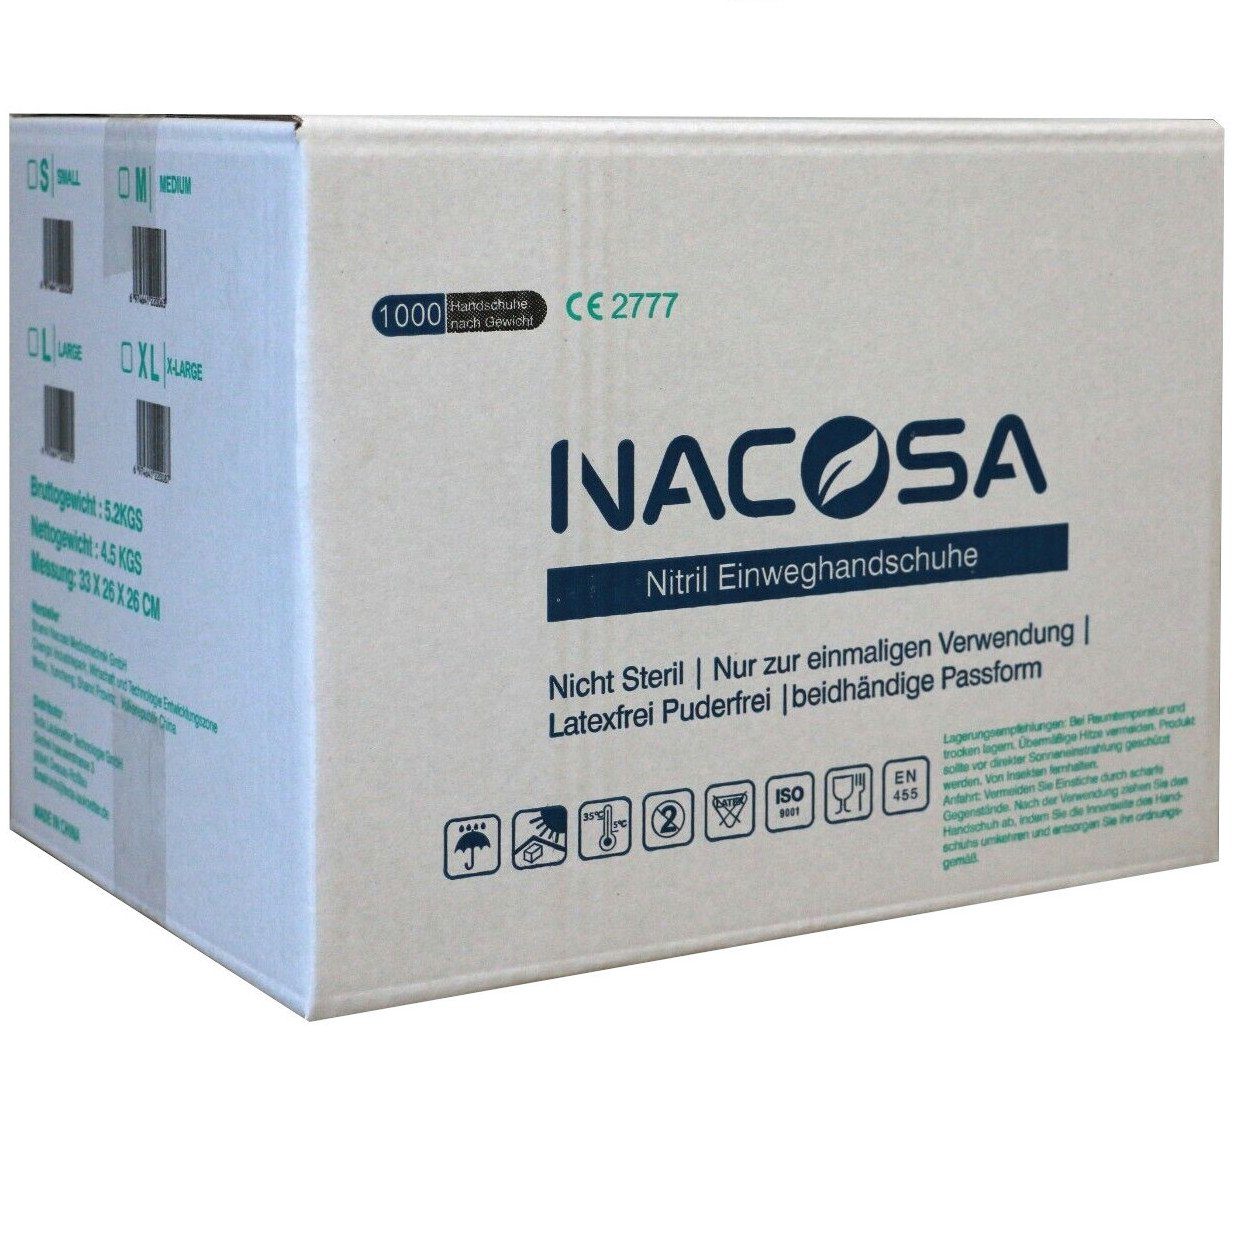 Nacosa Nitril-Handschuhe 10 Boxen á Handschuhe Viren auch Bakterien hohe Schutzklasse und höhere Grammatur, 100 gegen